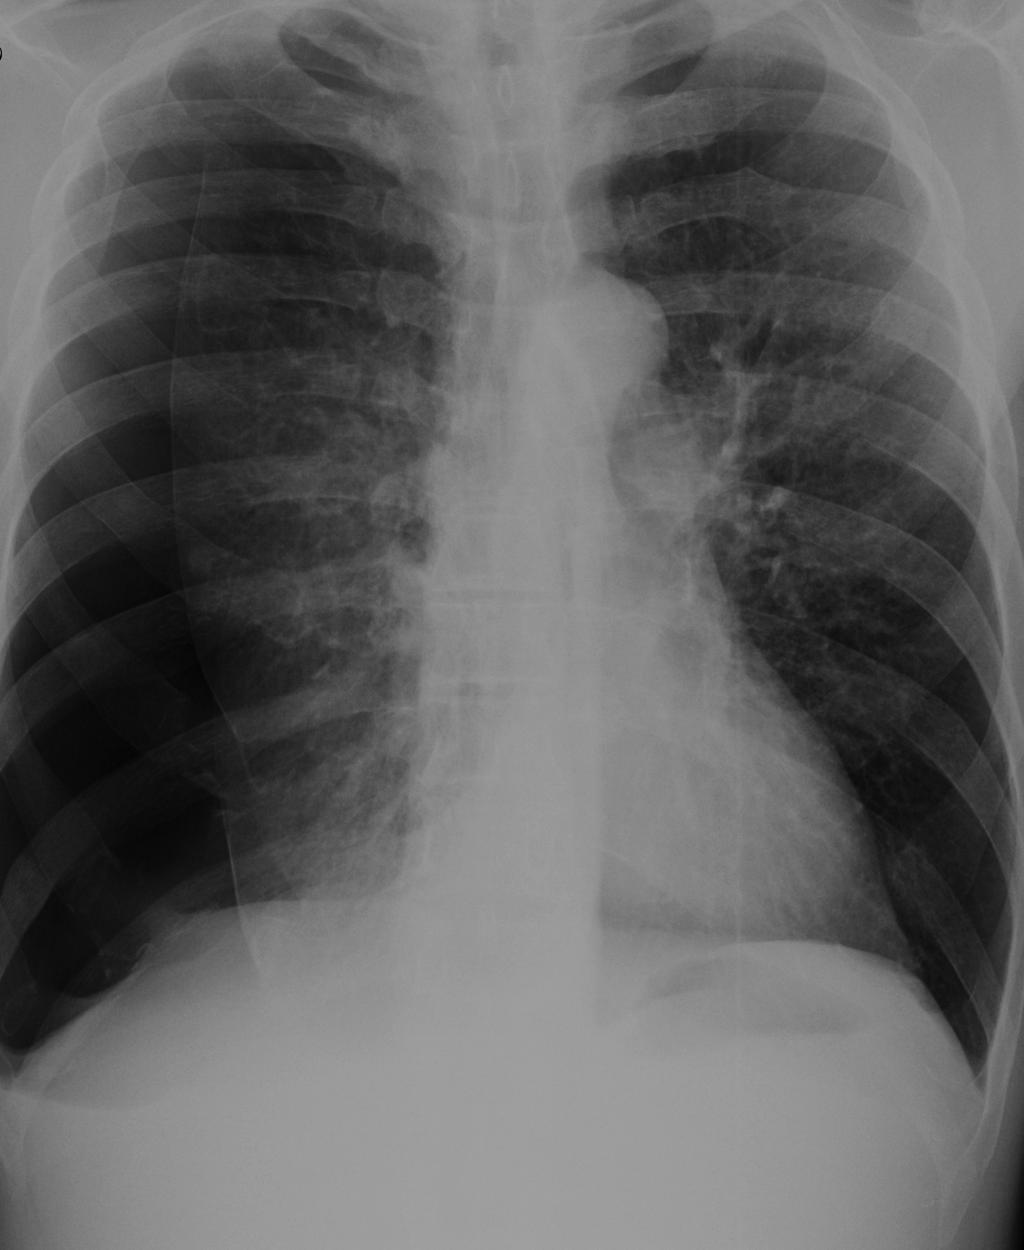 identificado como aumento da transparência do hemitórax associado a ausência das imagens da vasculatura pulmonar normal, principalmente na periferia e aspecto superior da imagem em PA.